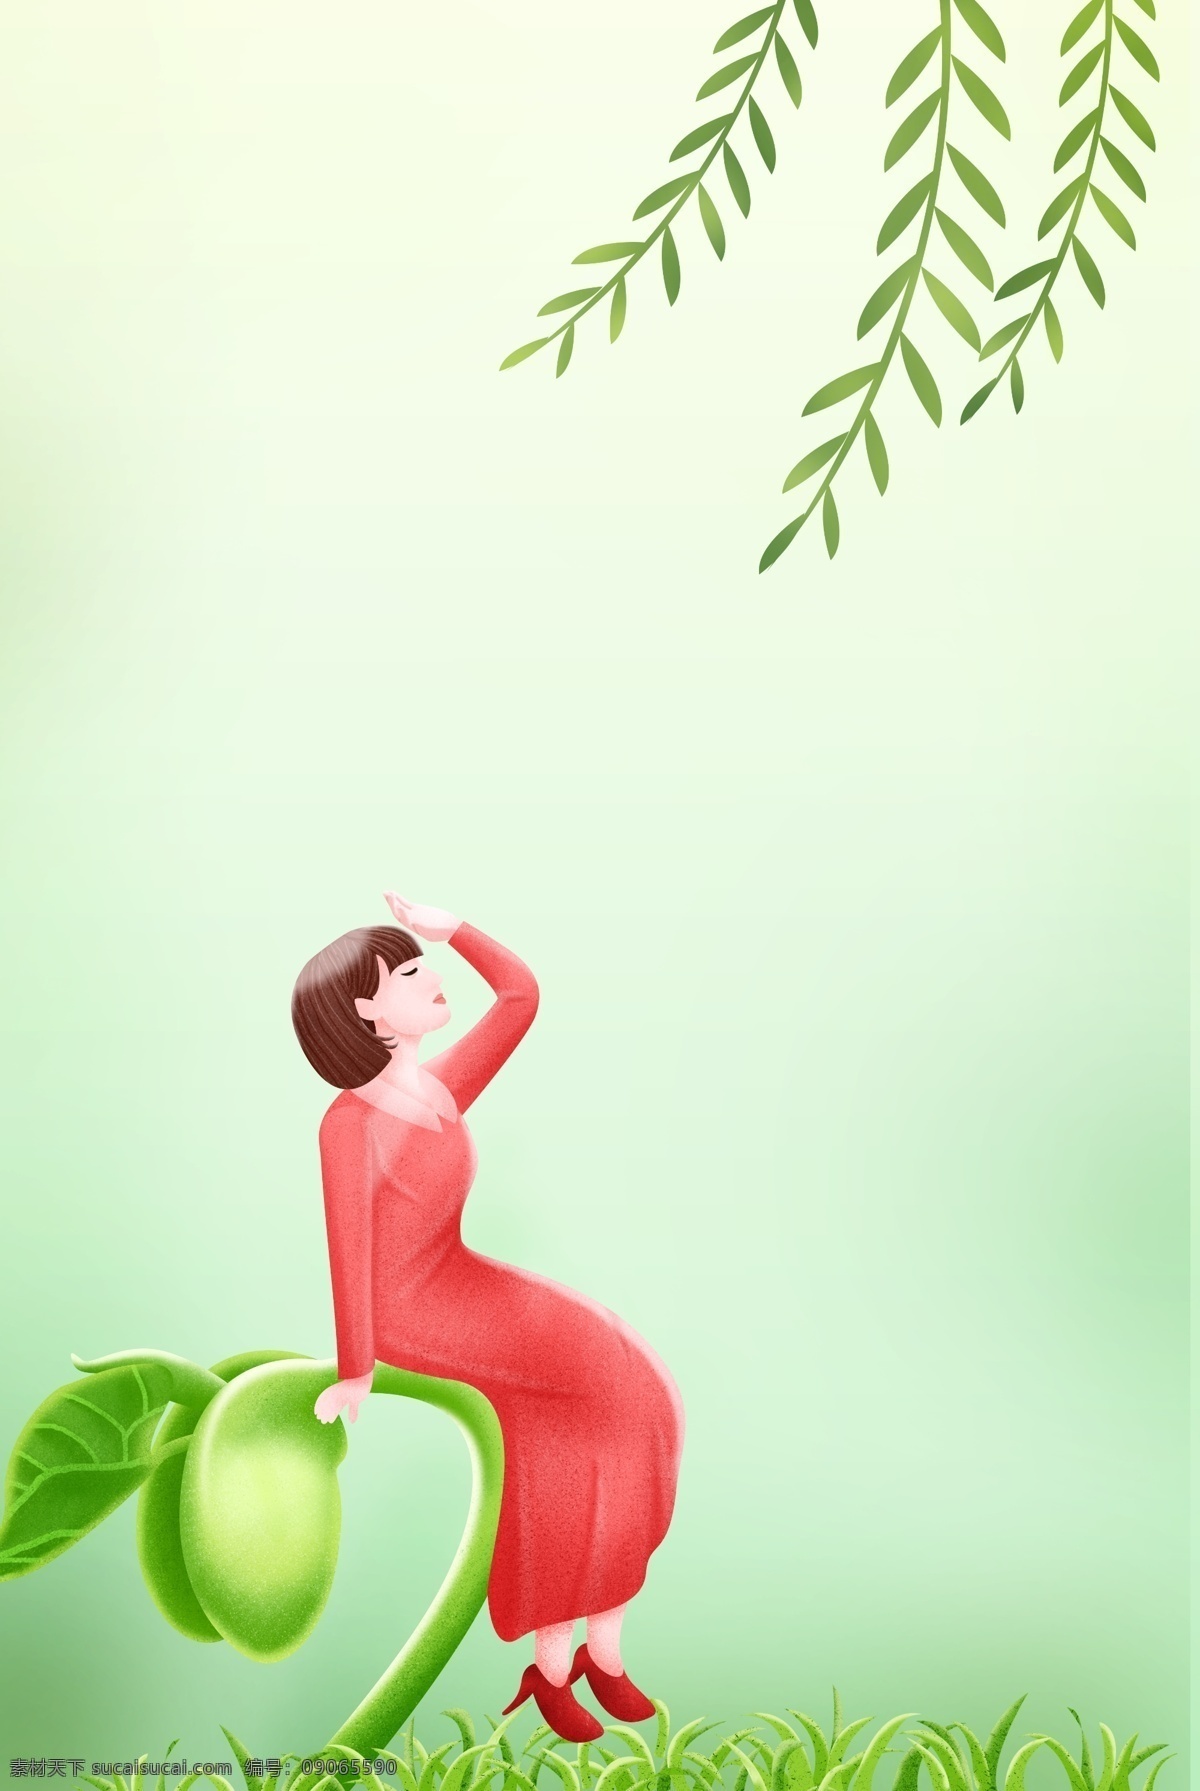 春分 绿 芽 少女 插画 海报 二十四节气 节气 绿色 出行 清新 插画风 促销海报